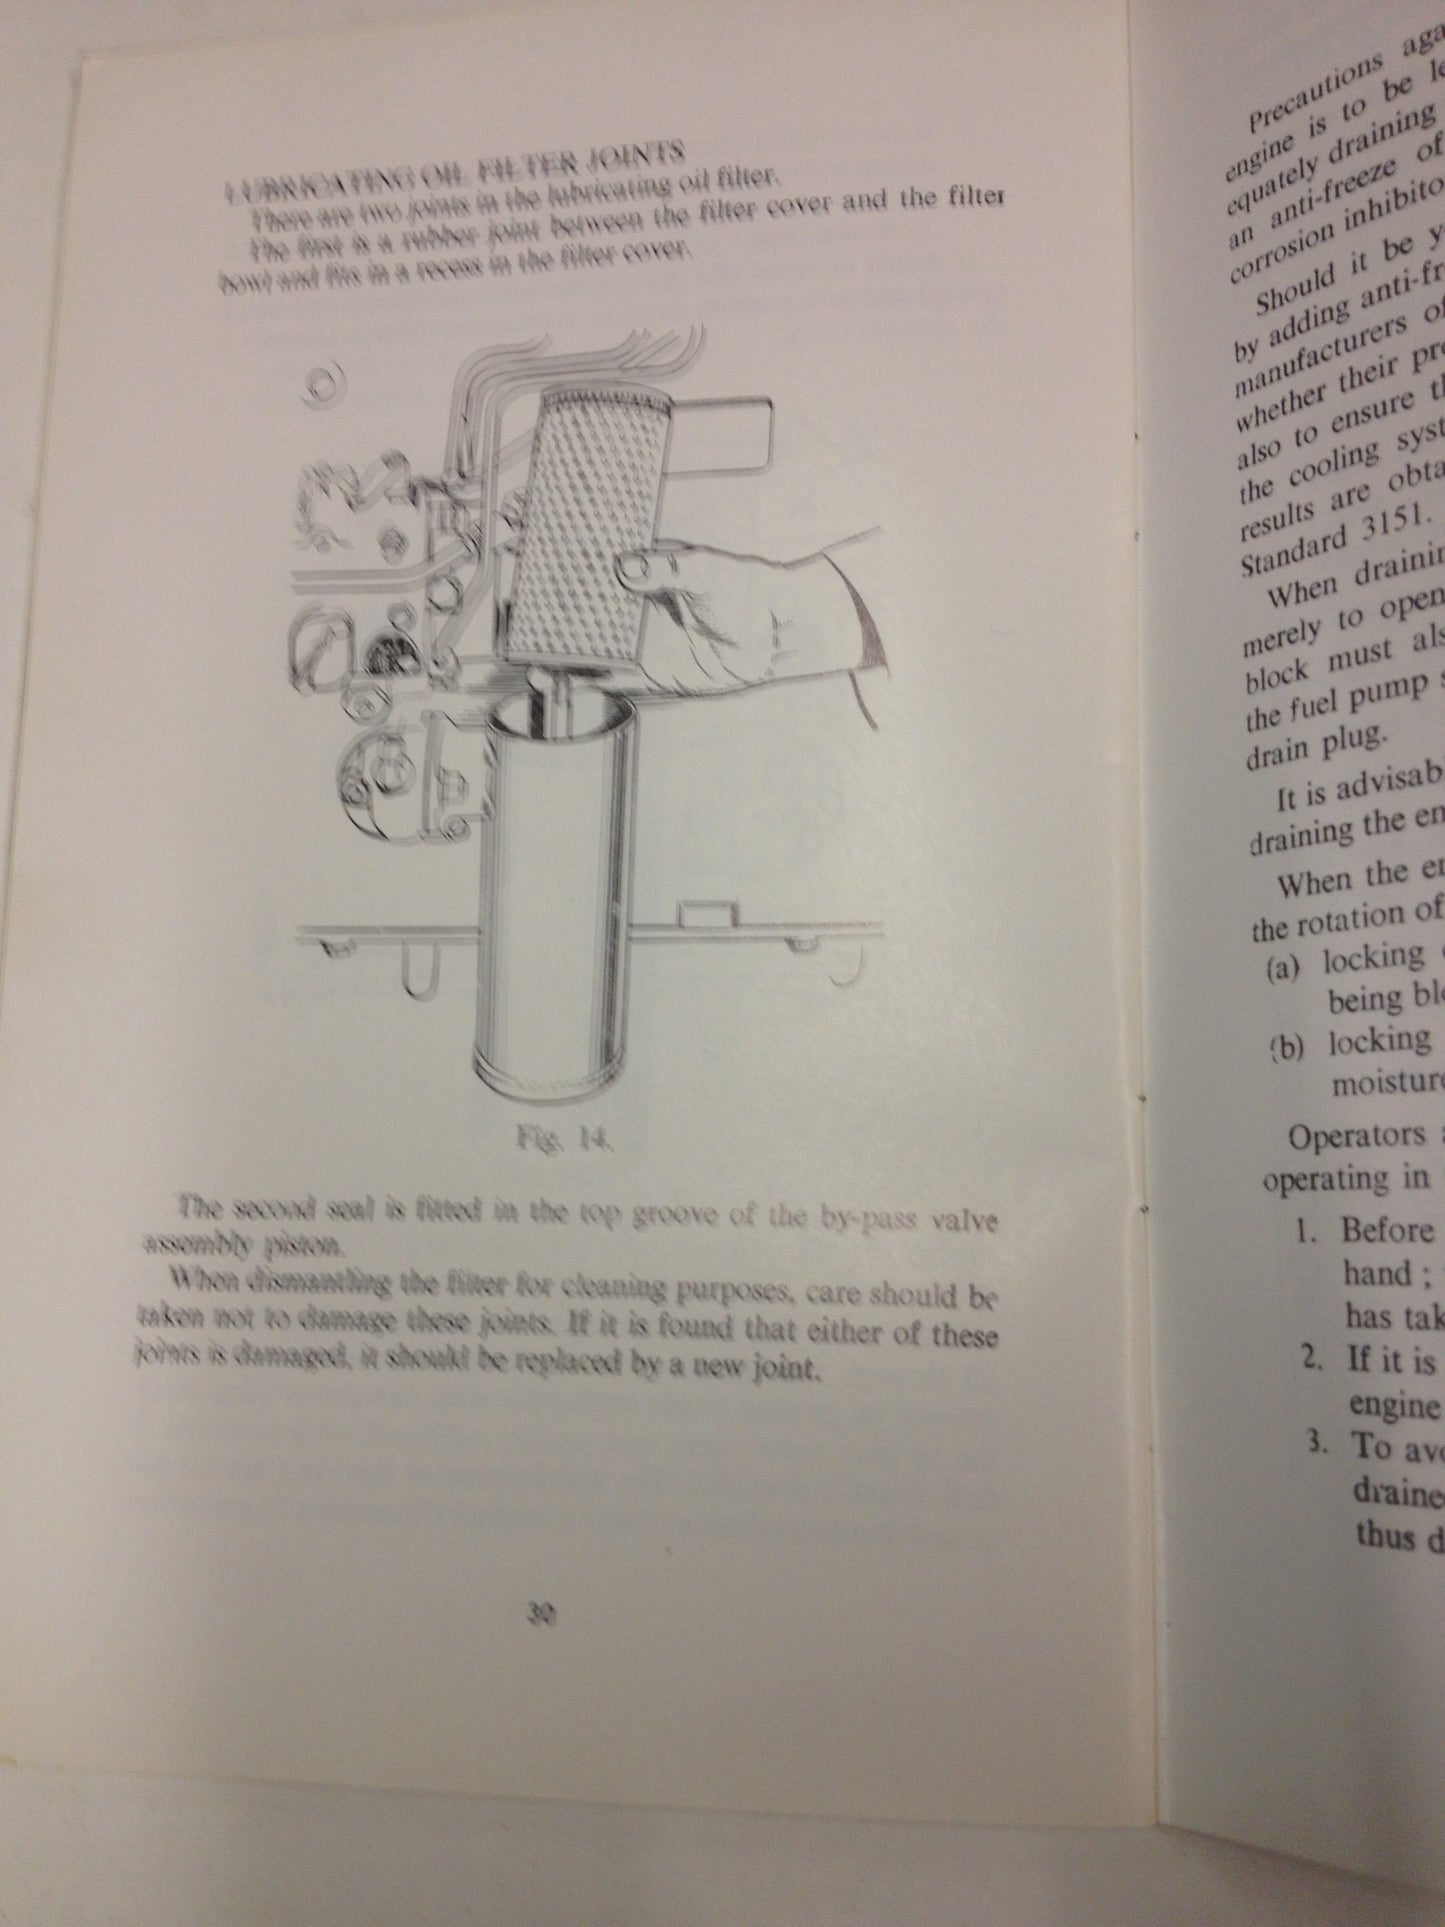 Book Manual for Perkins Diesel engines 4.270  Vintage Classic Handbook